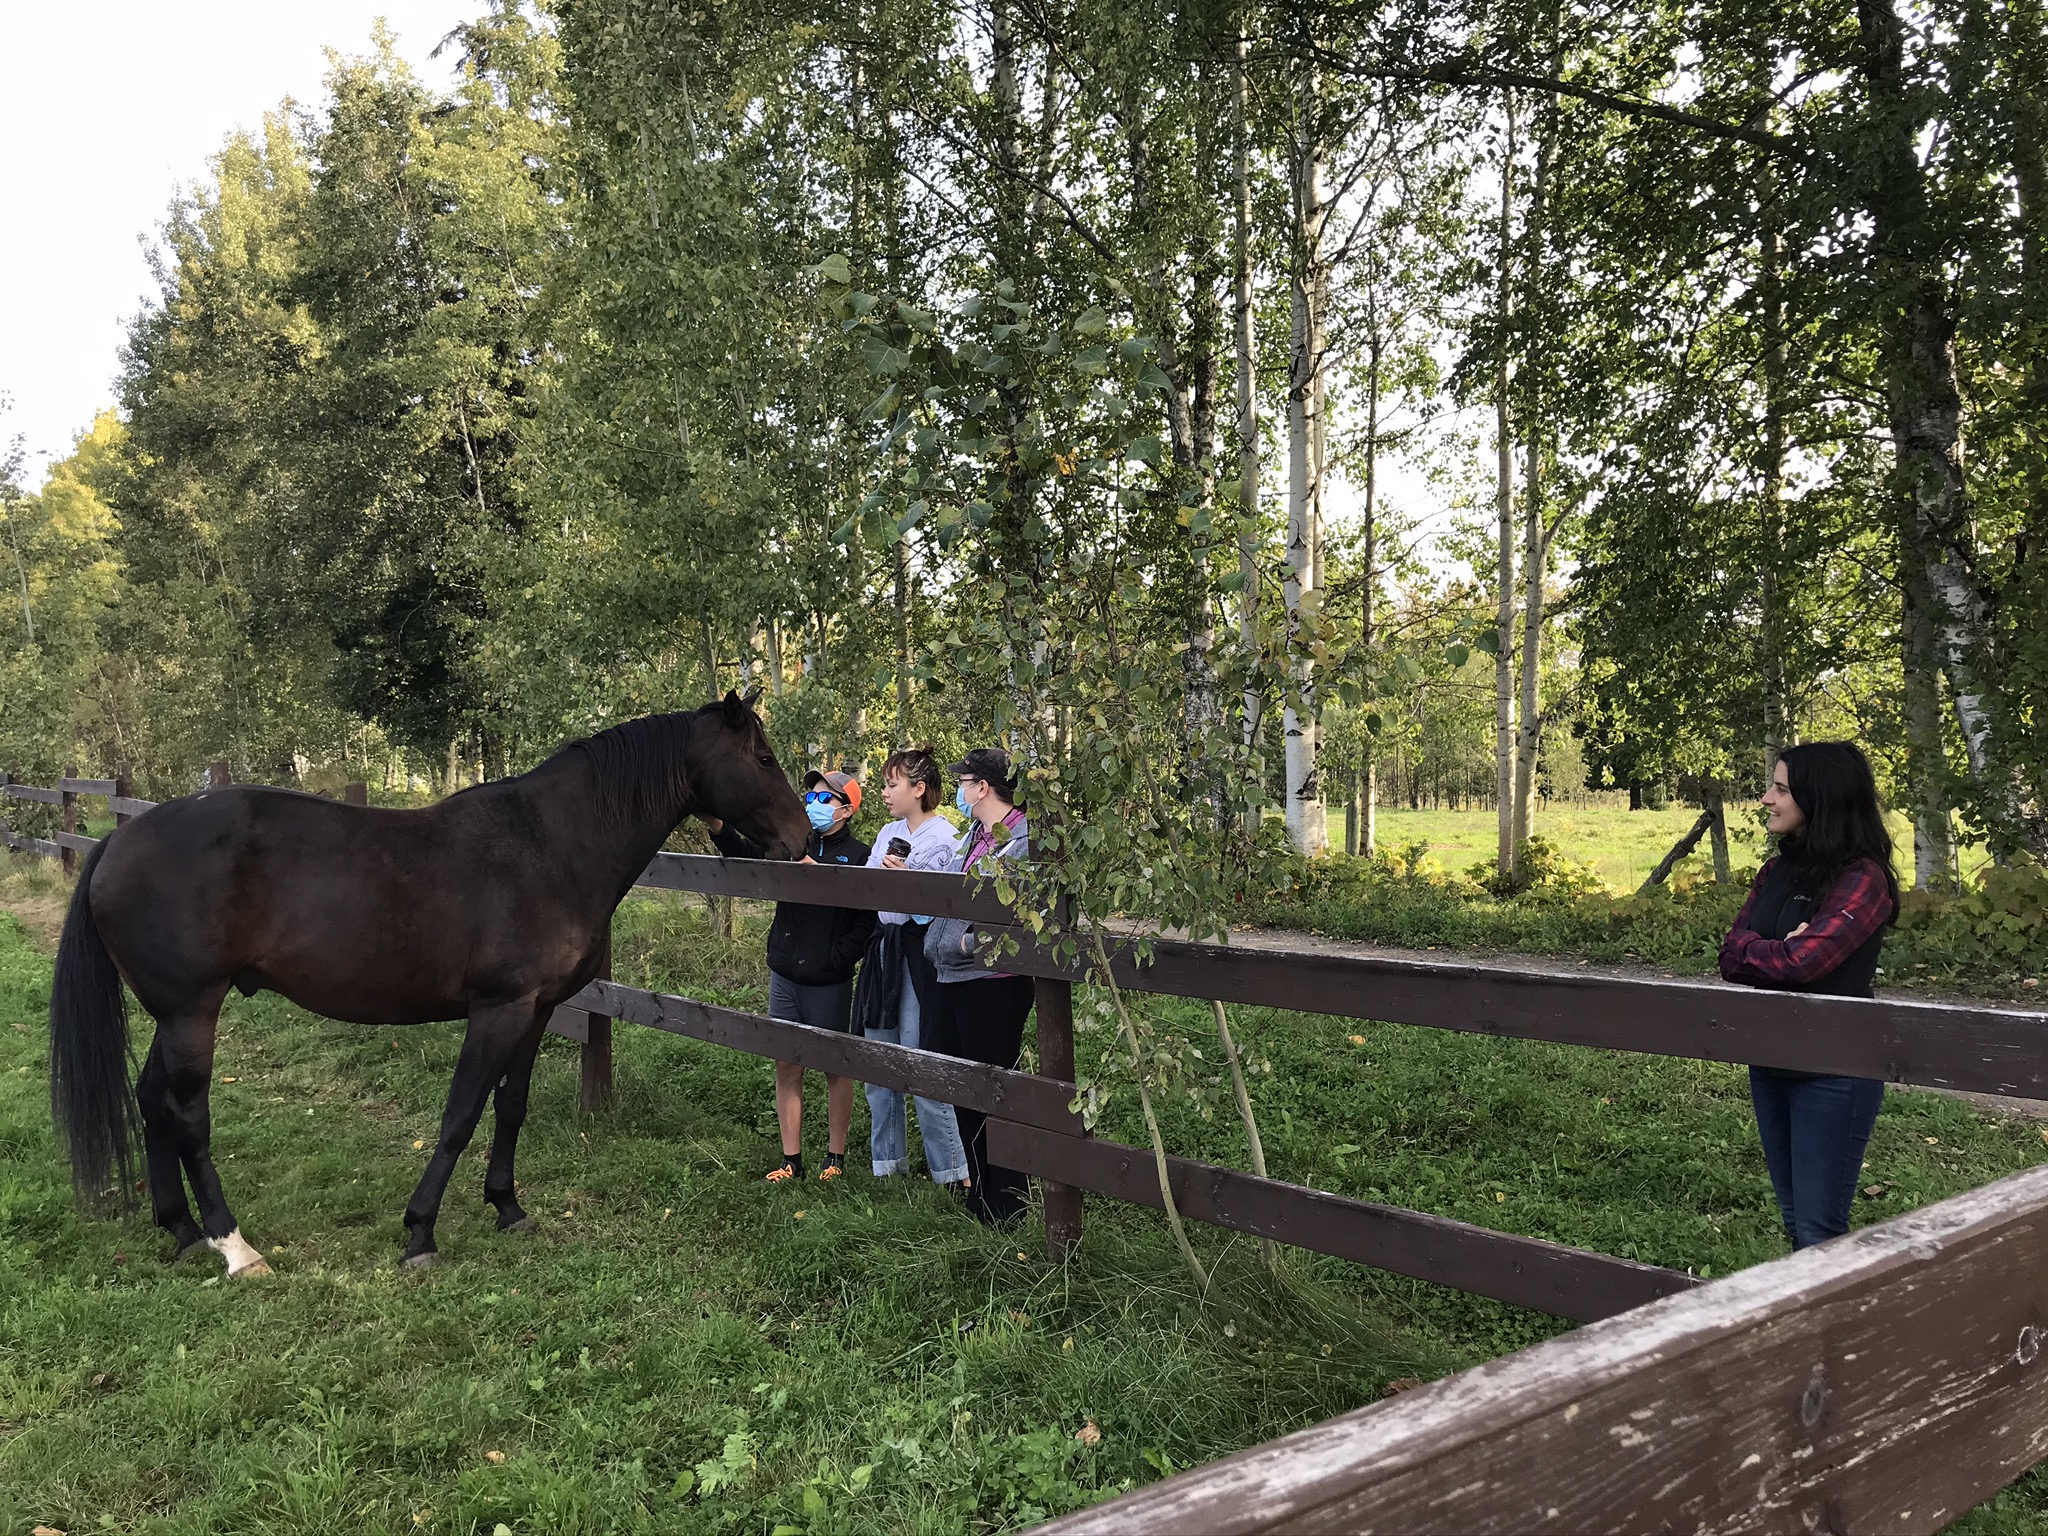 September 2020: Spotted Horse Nursery